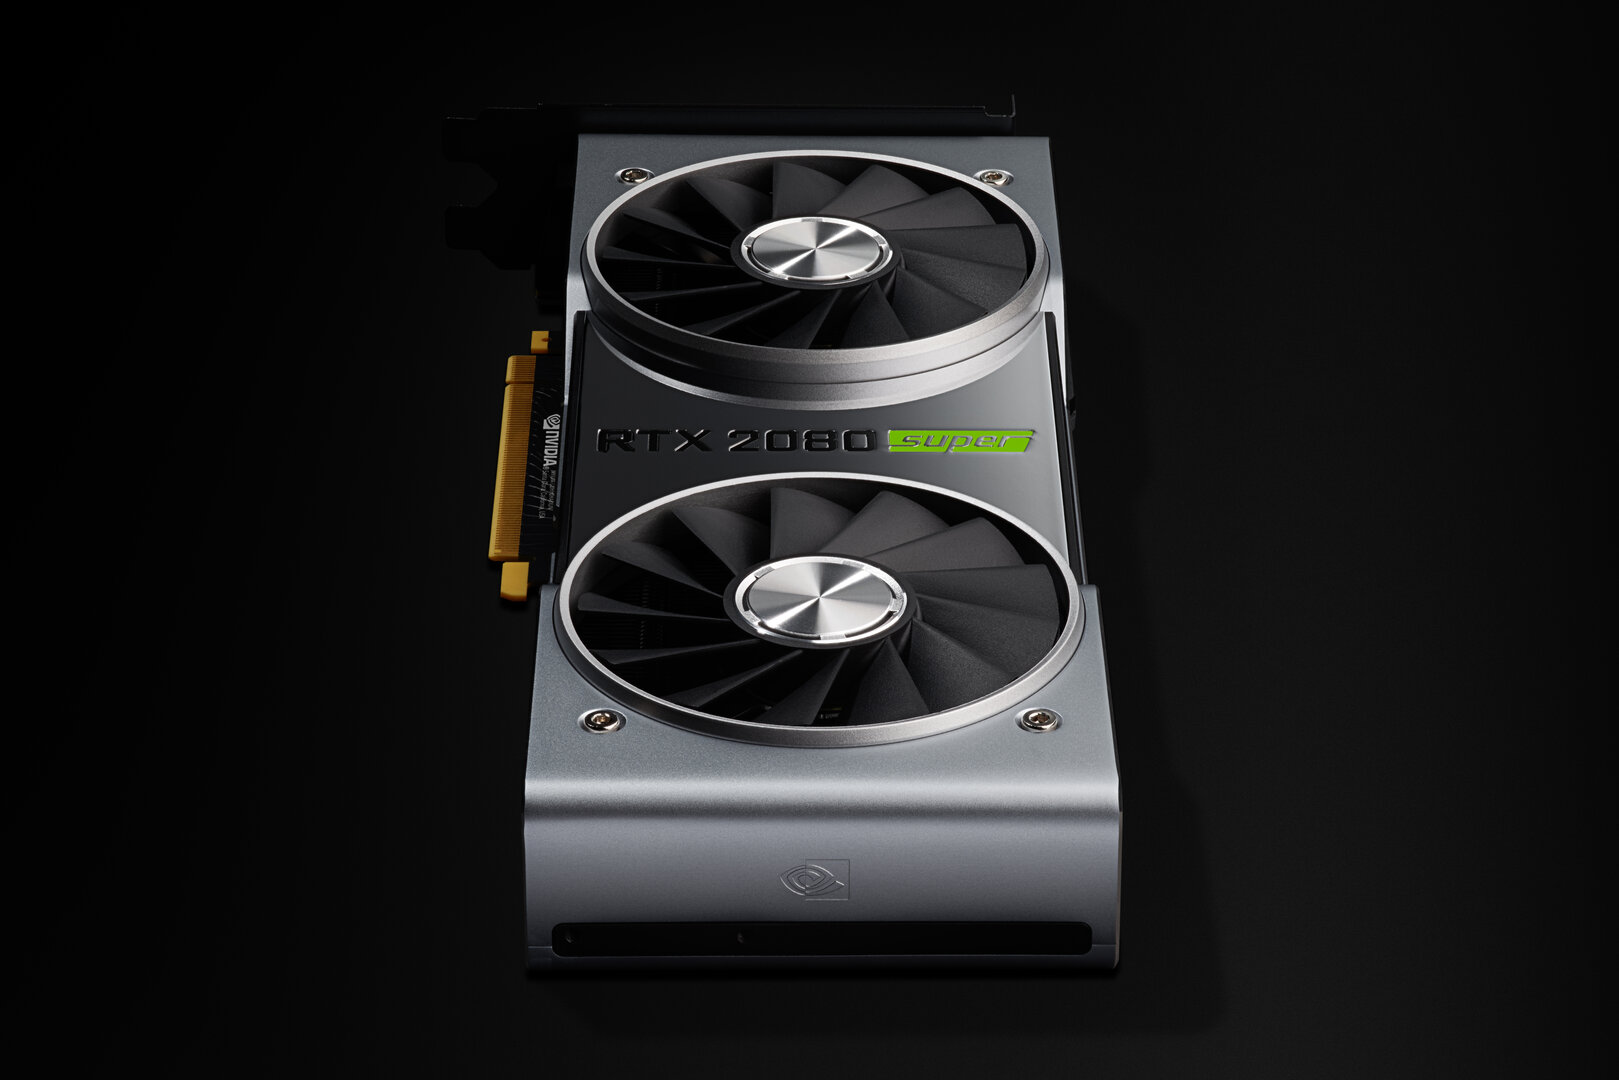 GeForce RTX 2080 Super